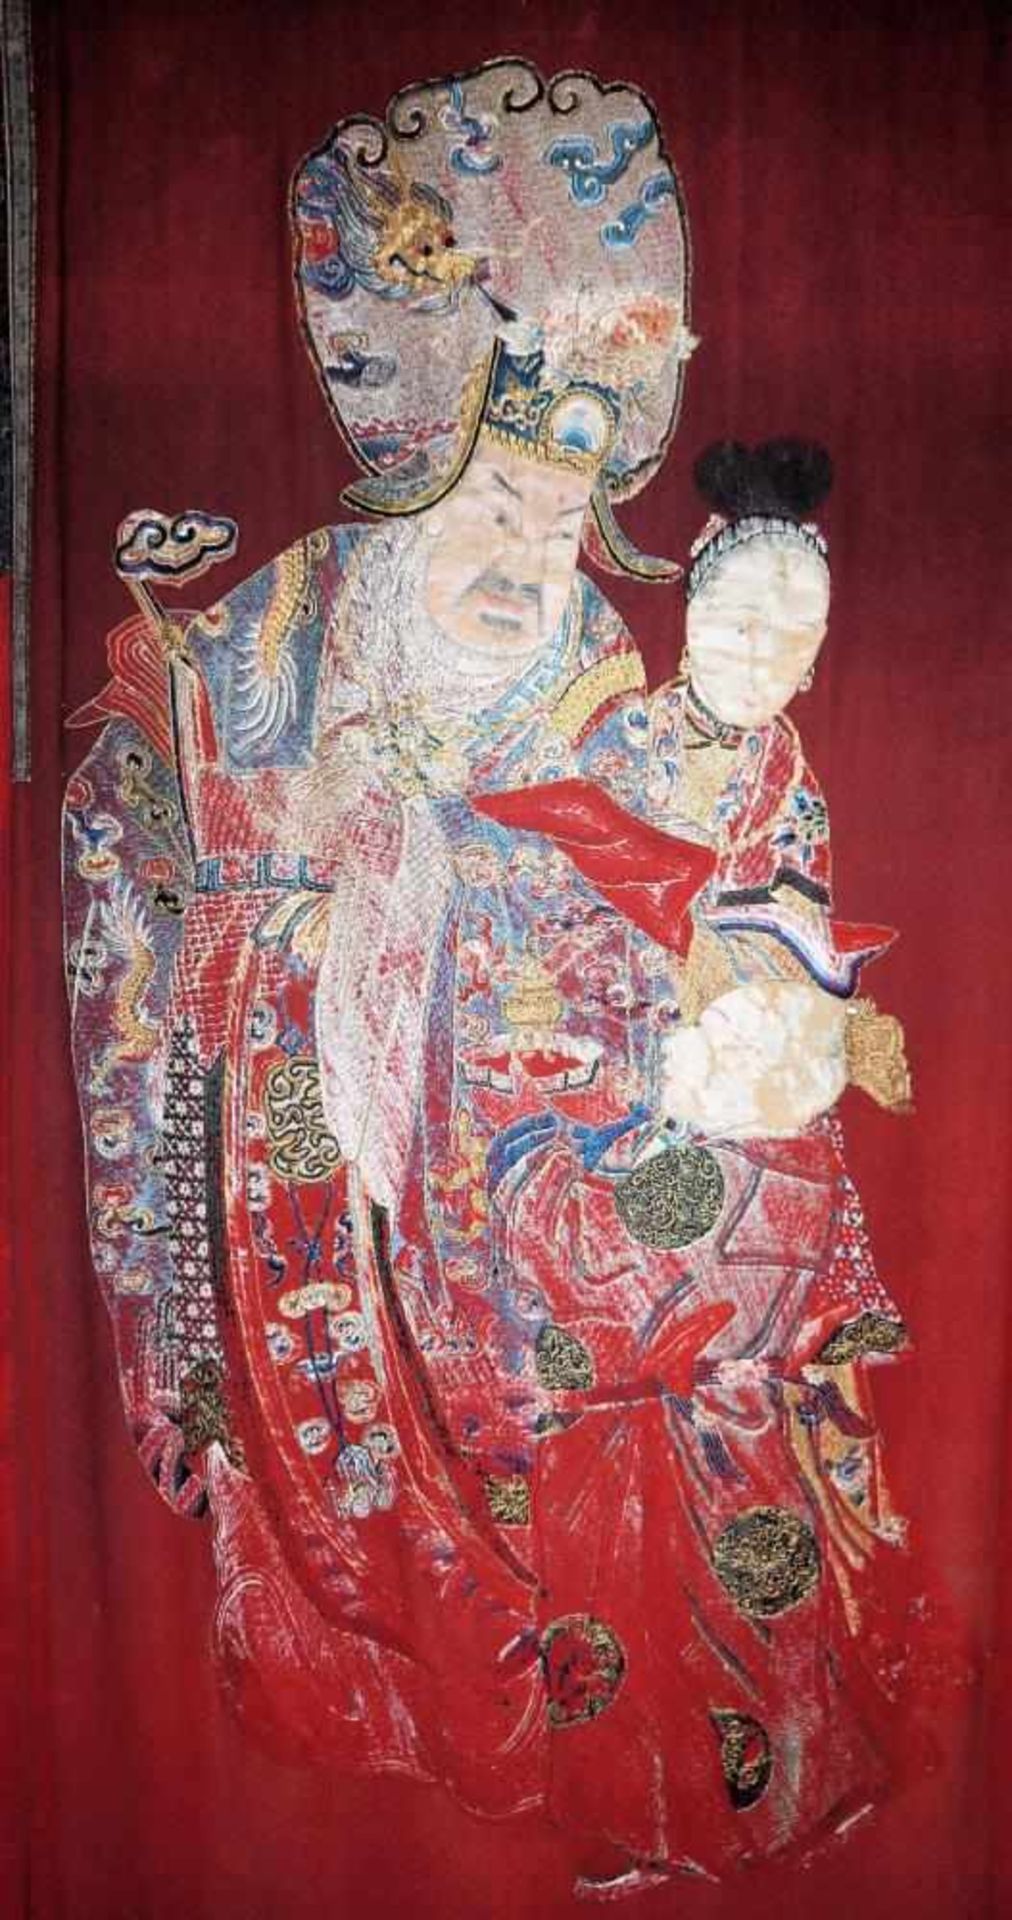 Großer Wandbehang eines legendären Herrschers, Qing-Zeit, China 19. Jh. Aufwändige Stickarbeit eines - Bild 2 aus 2